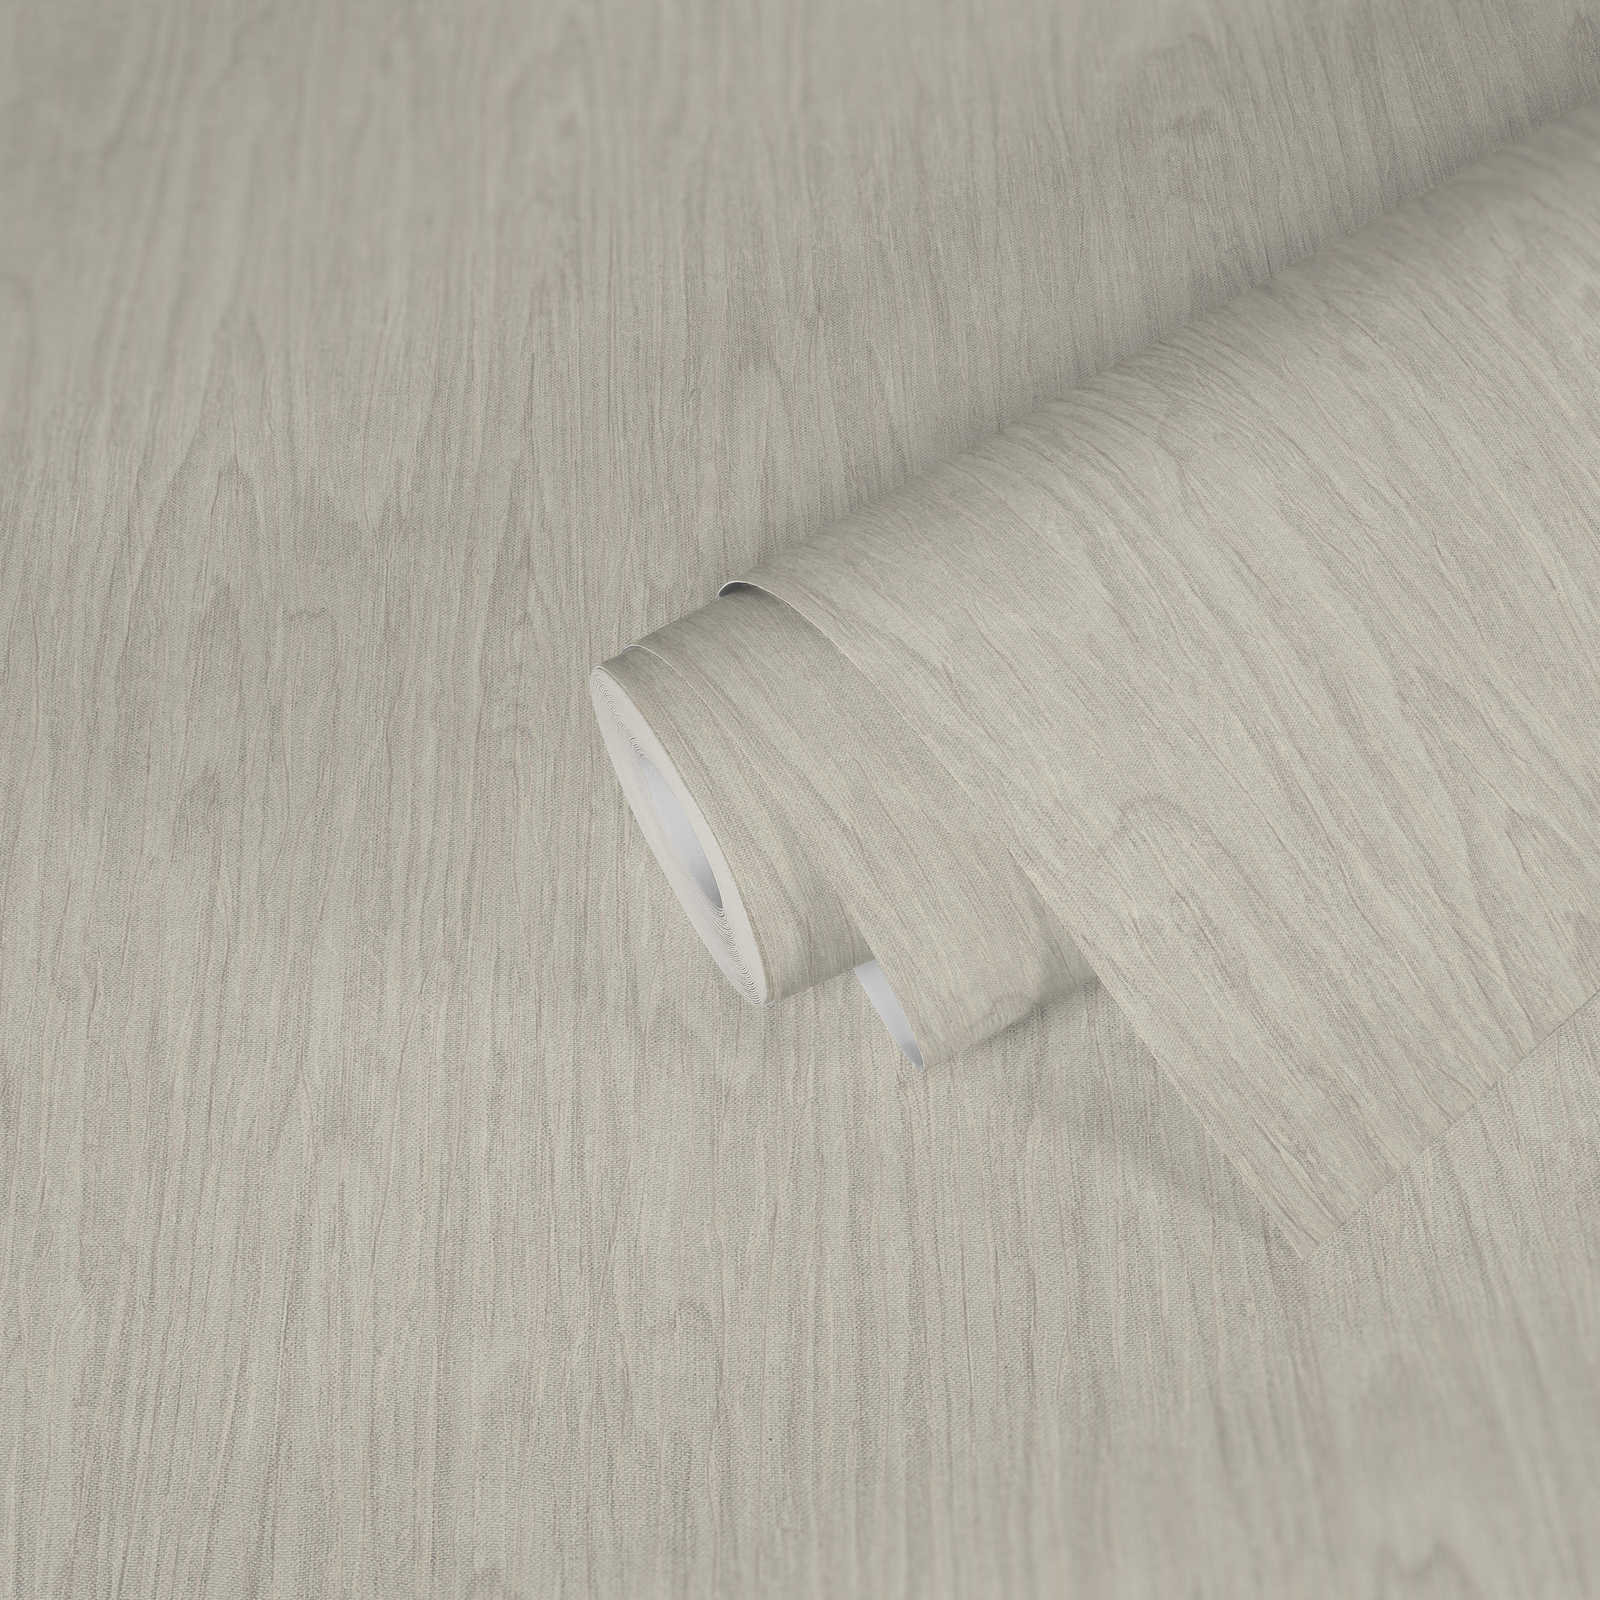             VERSACE Home Papier peint aspect bois réaliste - beige, crème, blanc
        